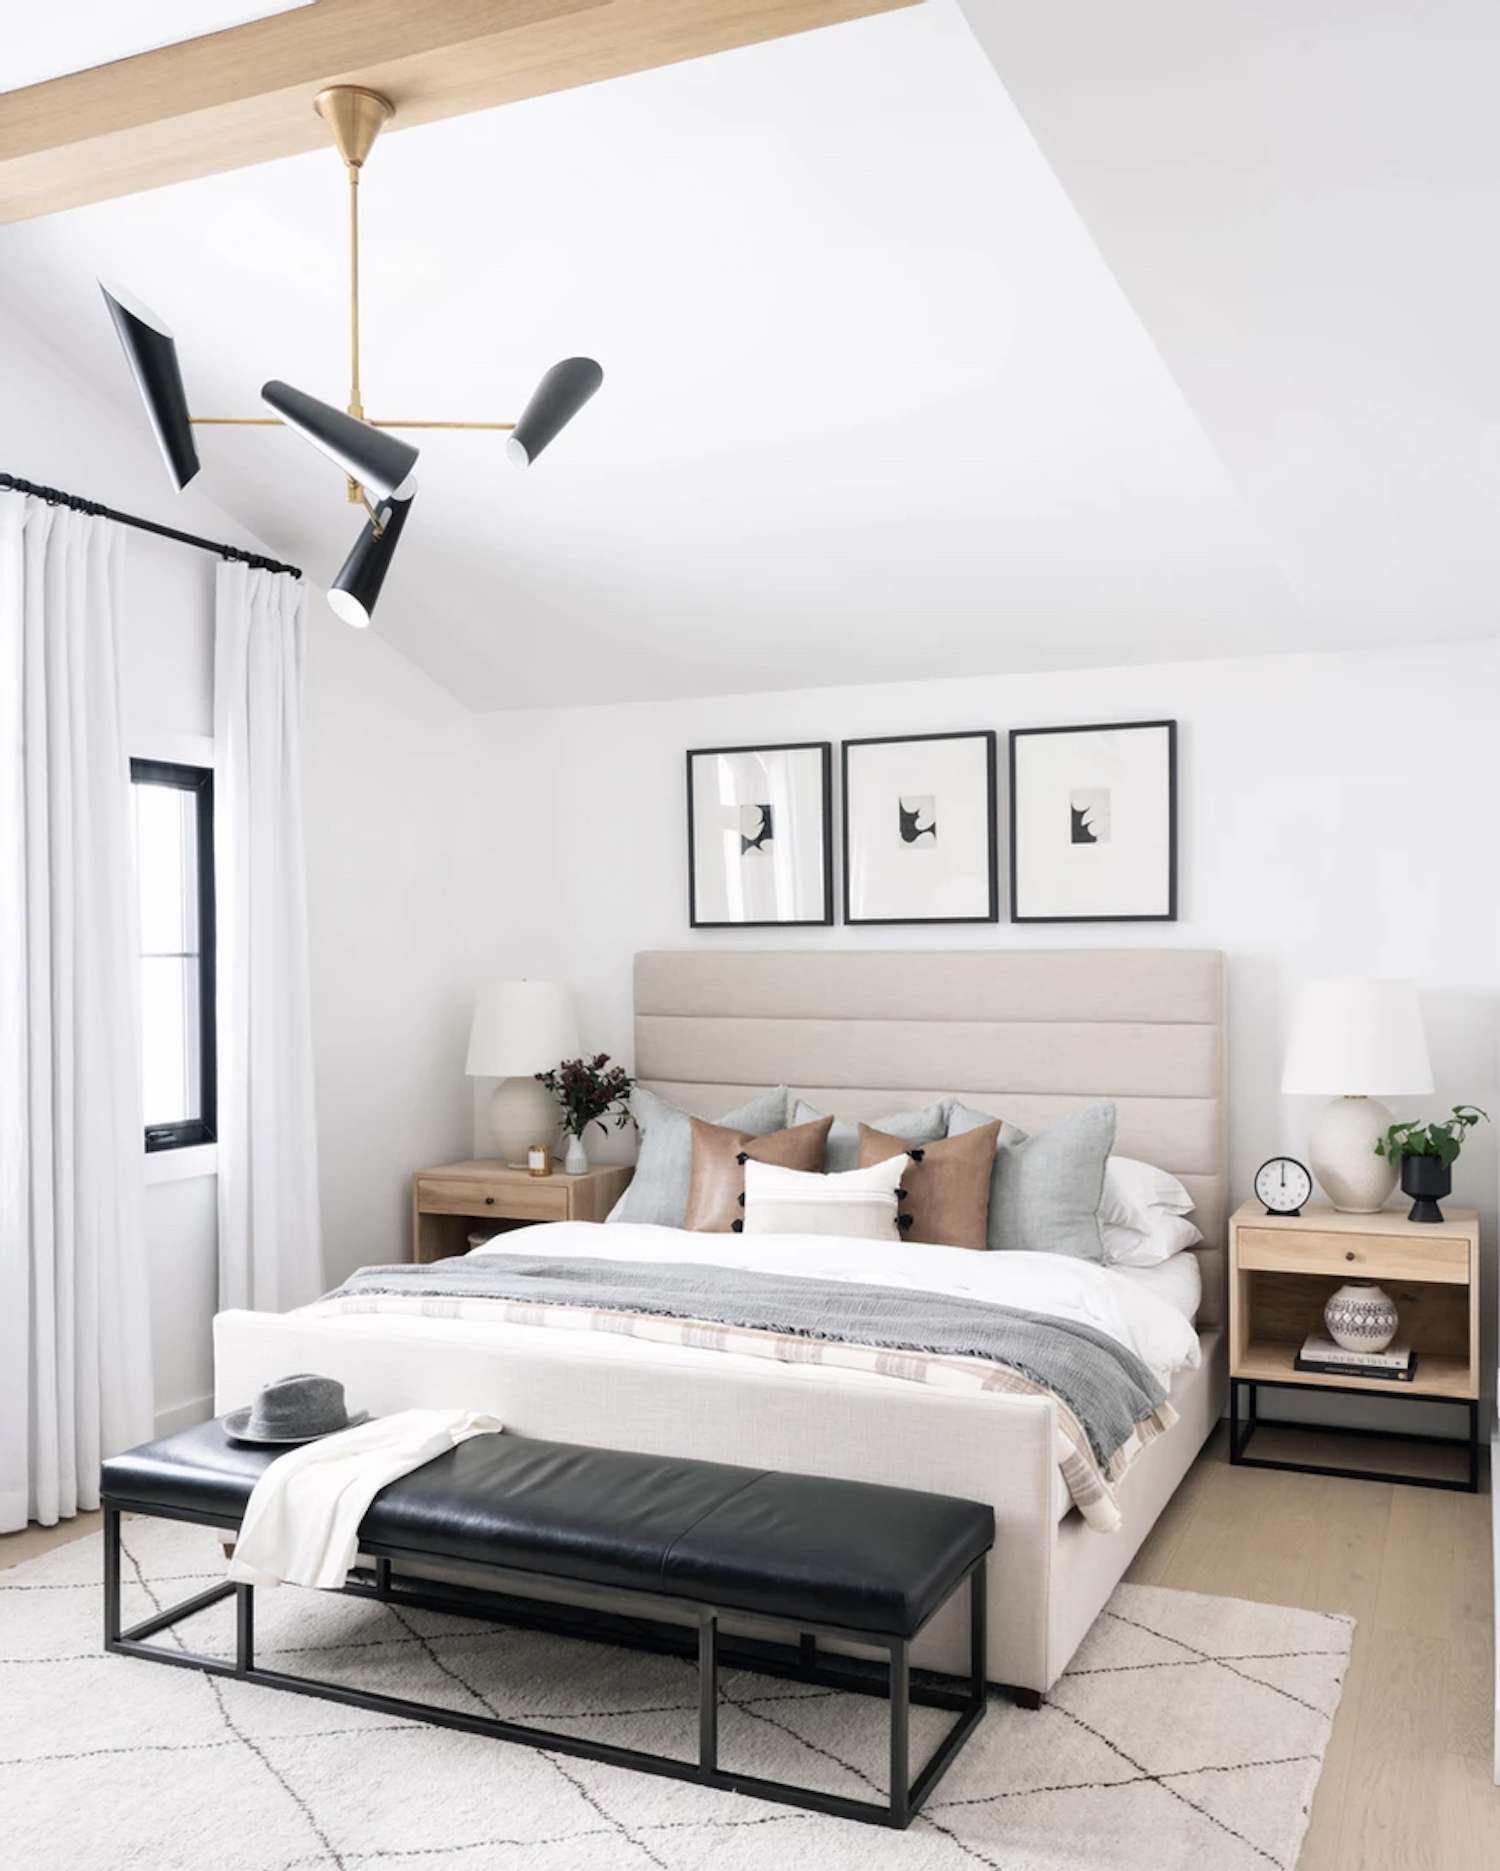 quarto moderno com detalhes em cinza claro e marrom. tapete branco. Banco de couro preto na extremidade da cama